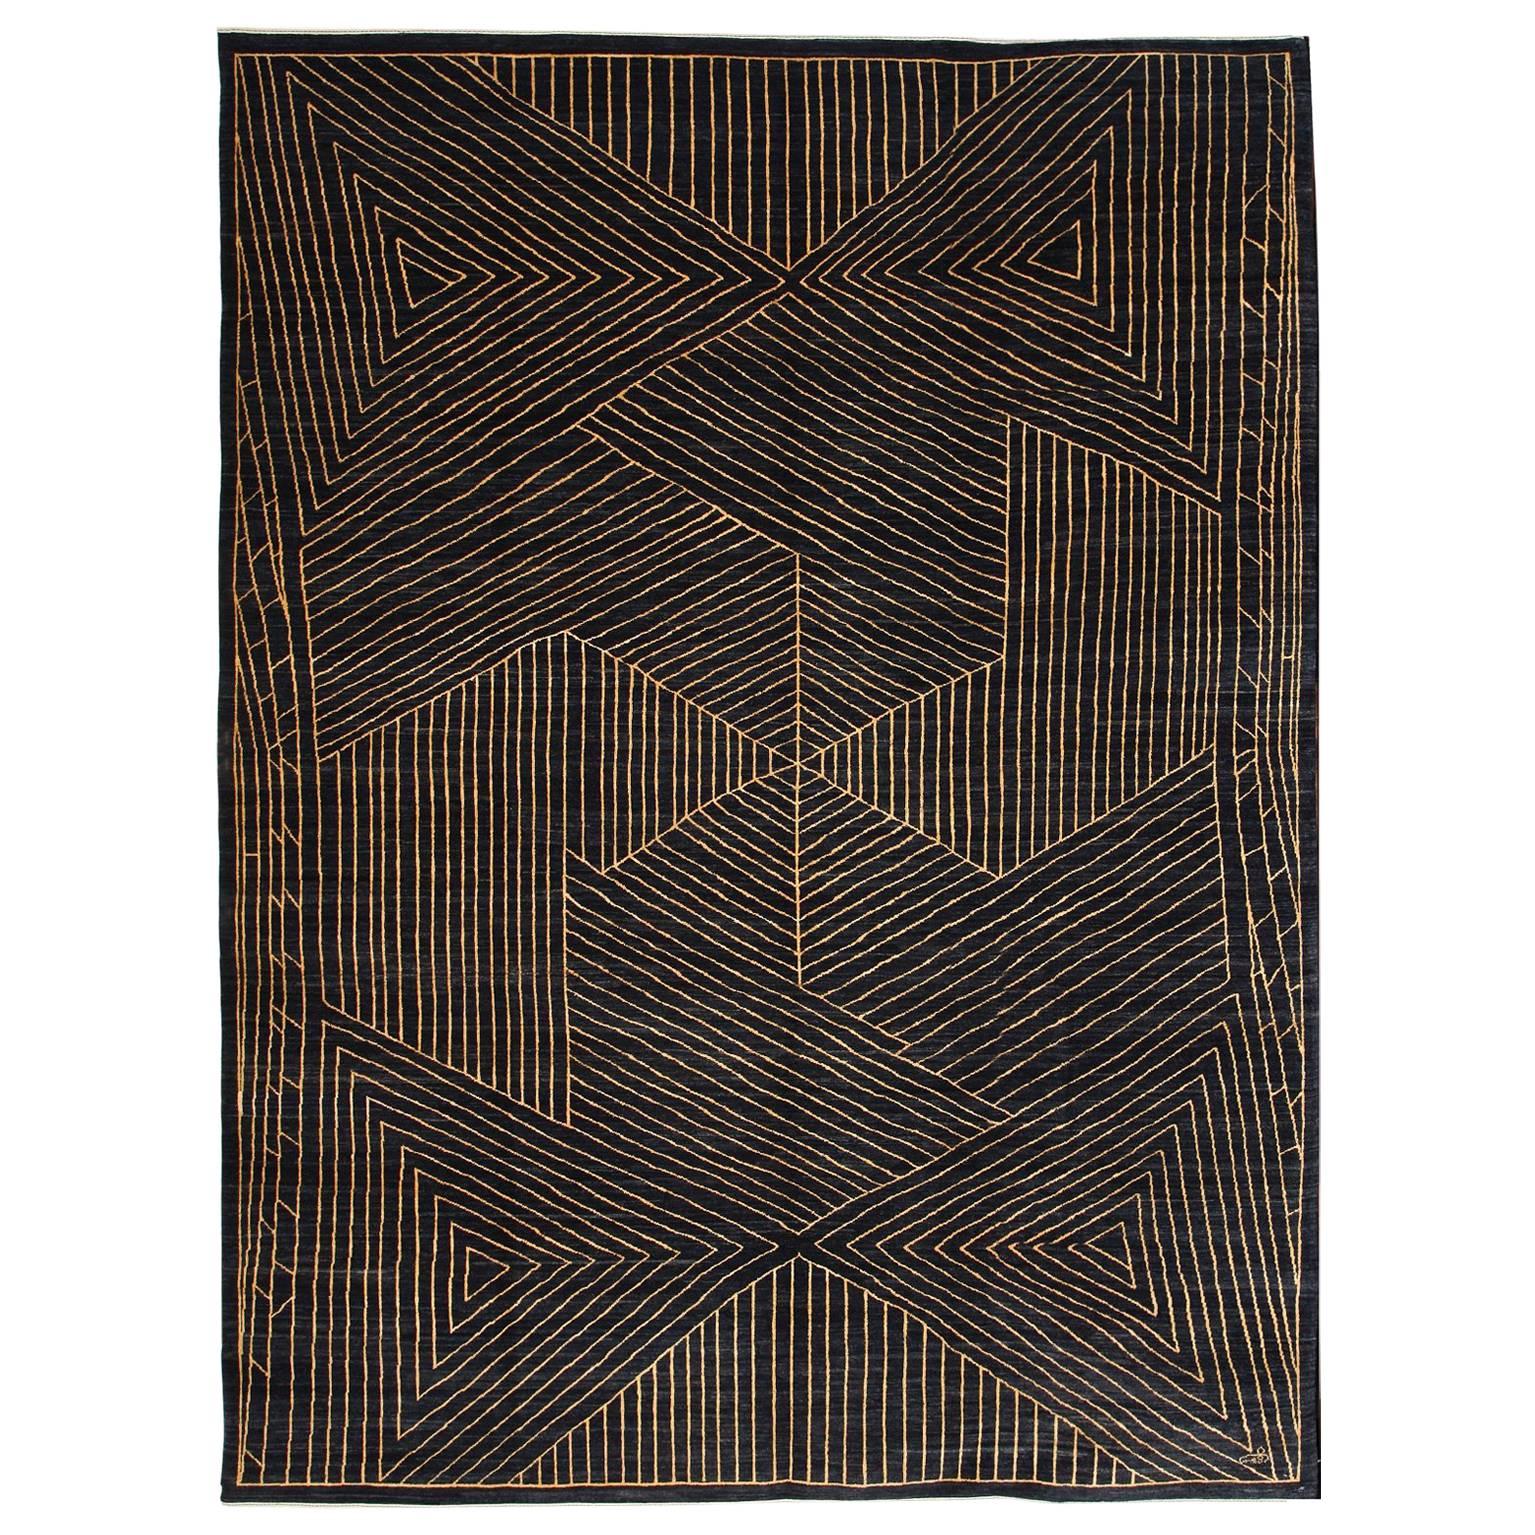 Orley Shabahang "Taar" Contemporary Persian Rug, 10x14